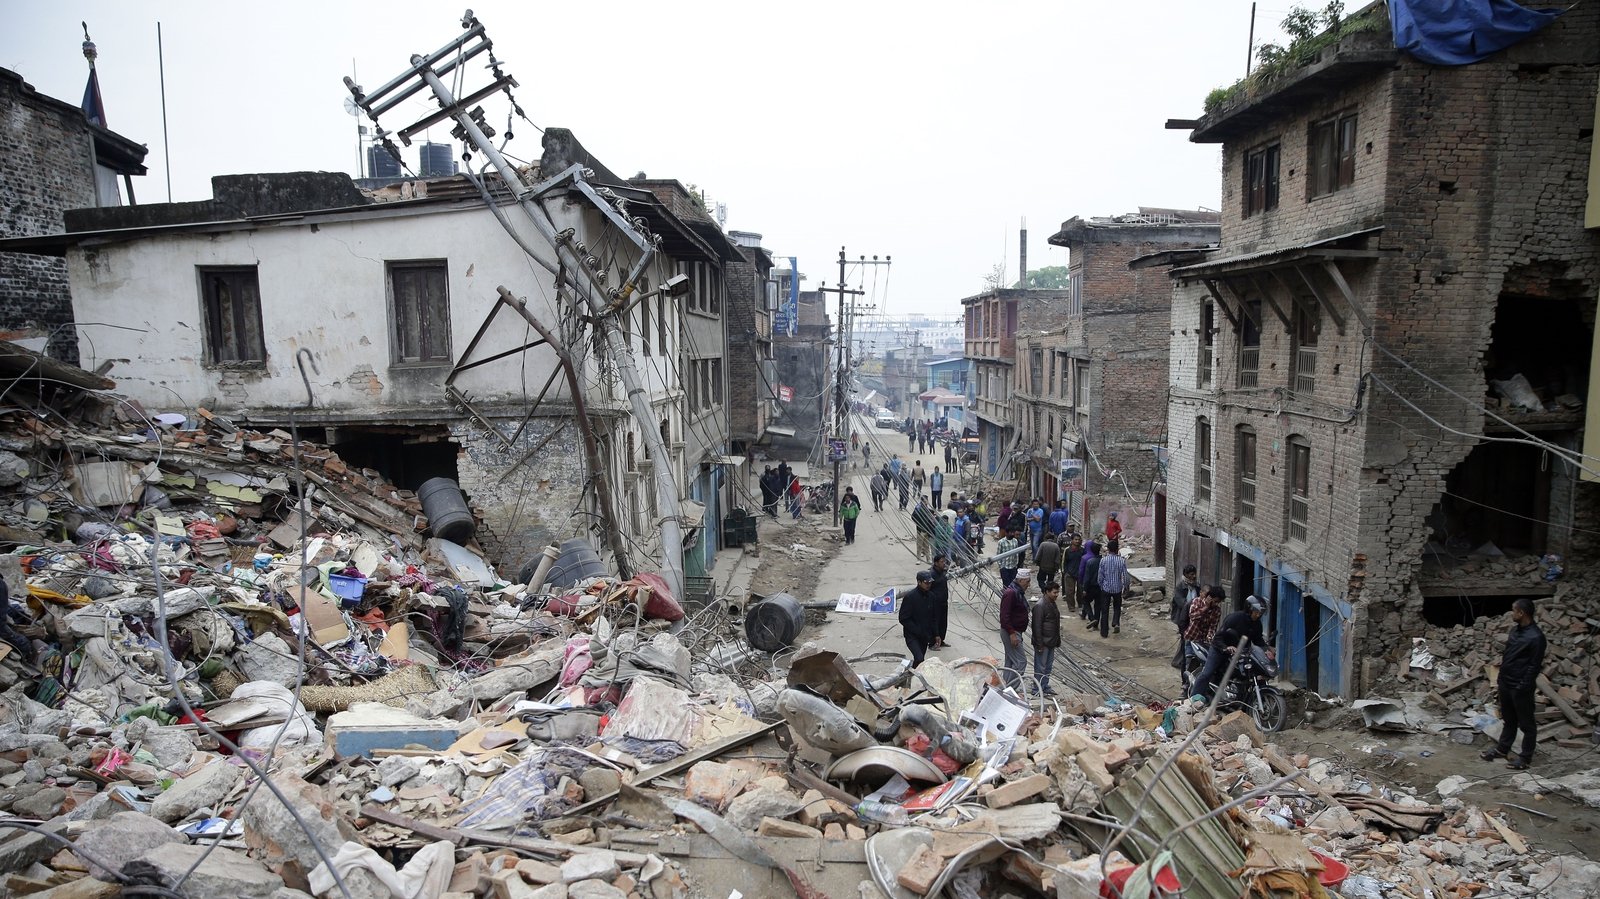 Землетрясение случаи. Землетрясение в Непале 2015. Непал, 25 апреля 2015 года: 8000 погибших. Непал 2015 землетрясение 25 апреля. Катманду землетрясение.